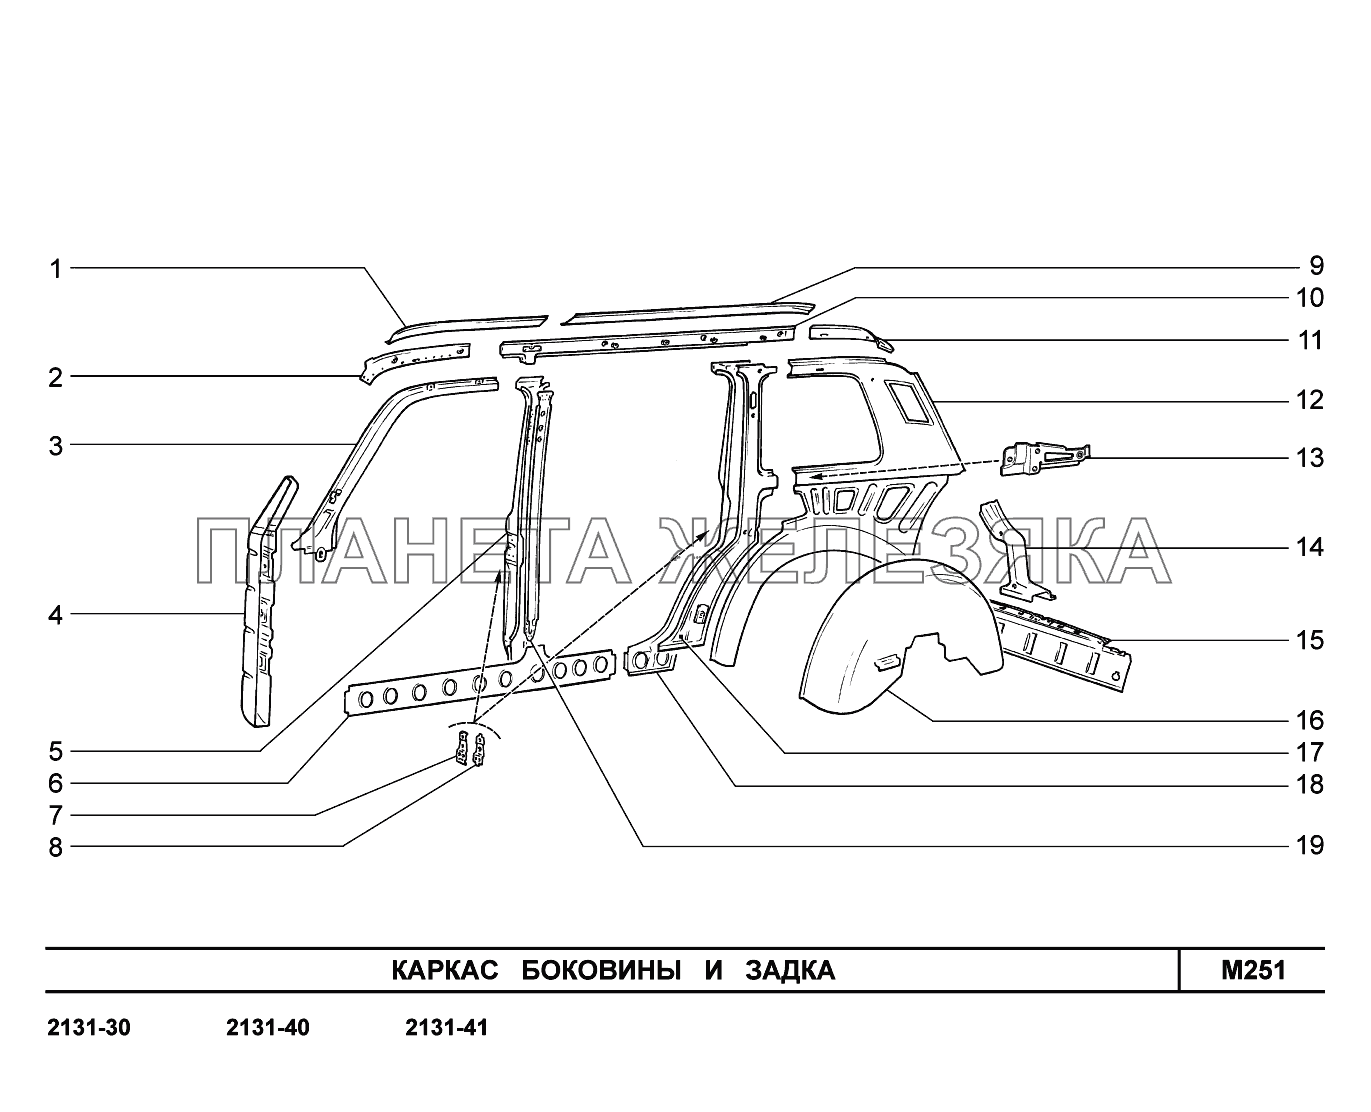 M251. Каркас боковины и задка LADA 4x4